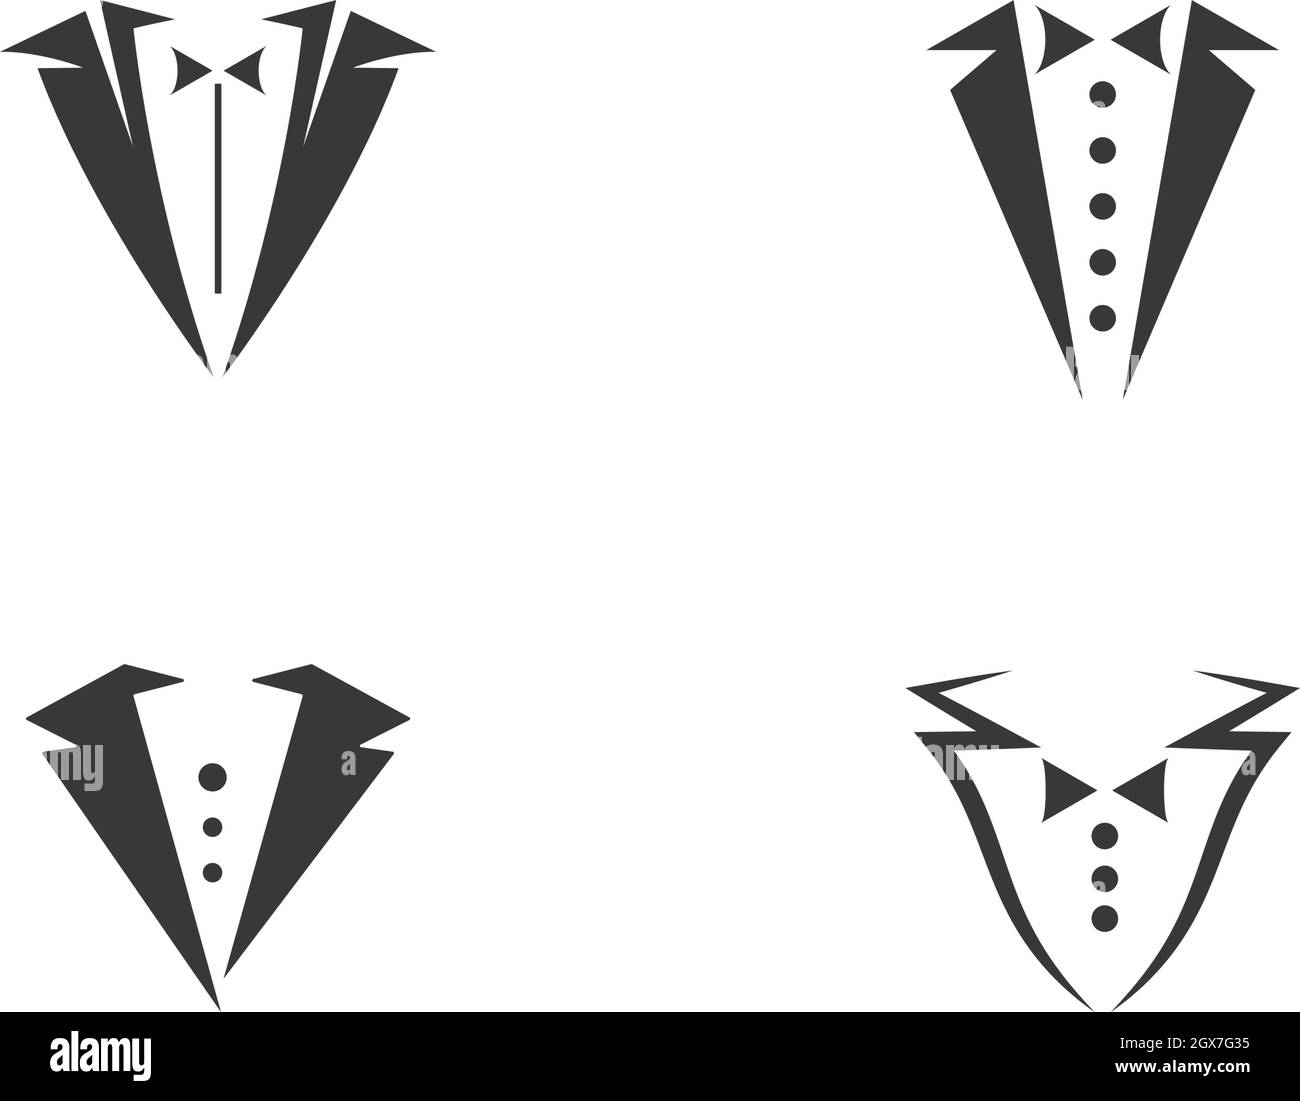 Tuxedo logo vector icon template Stock Vector Image & Art - Alamy